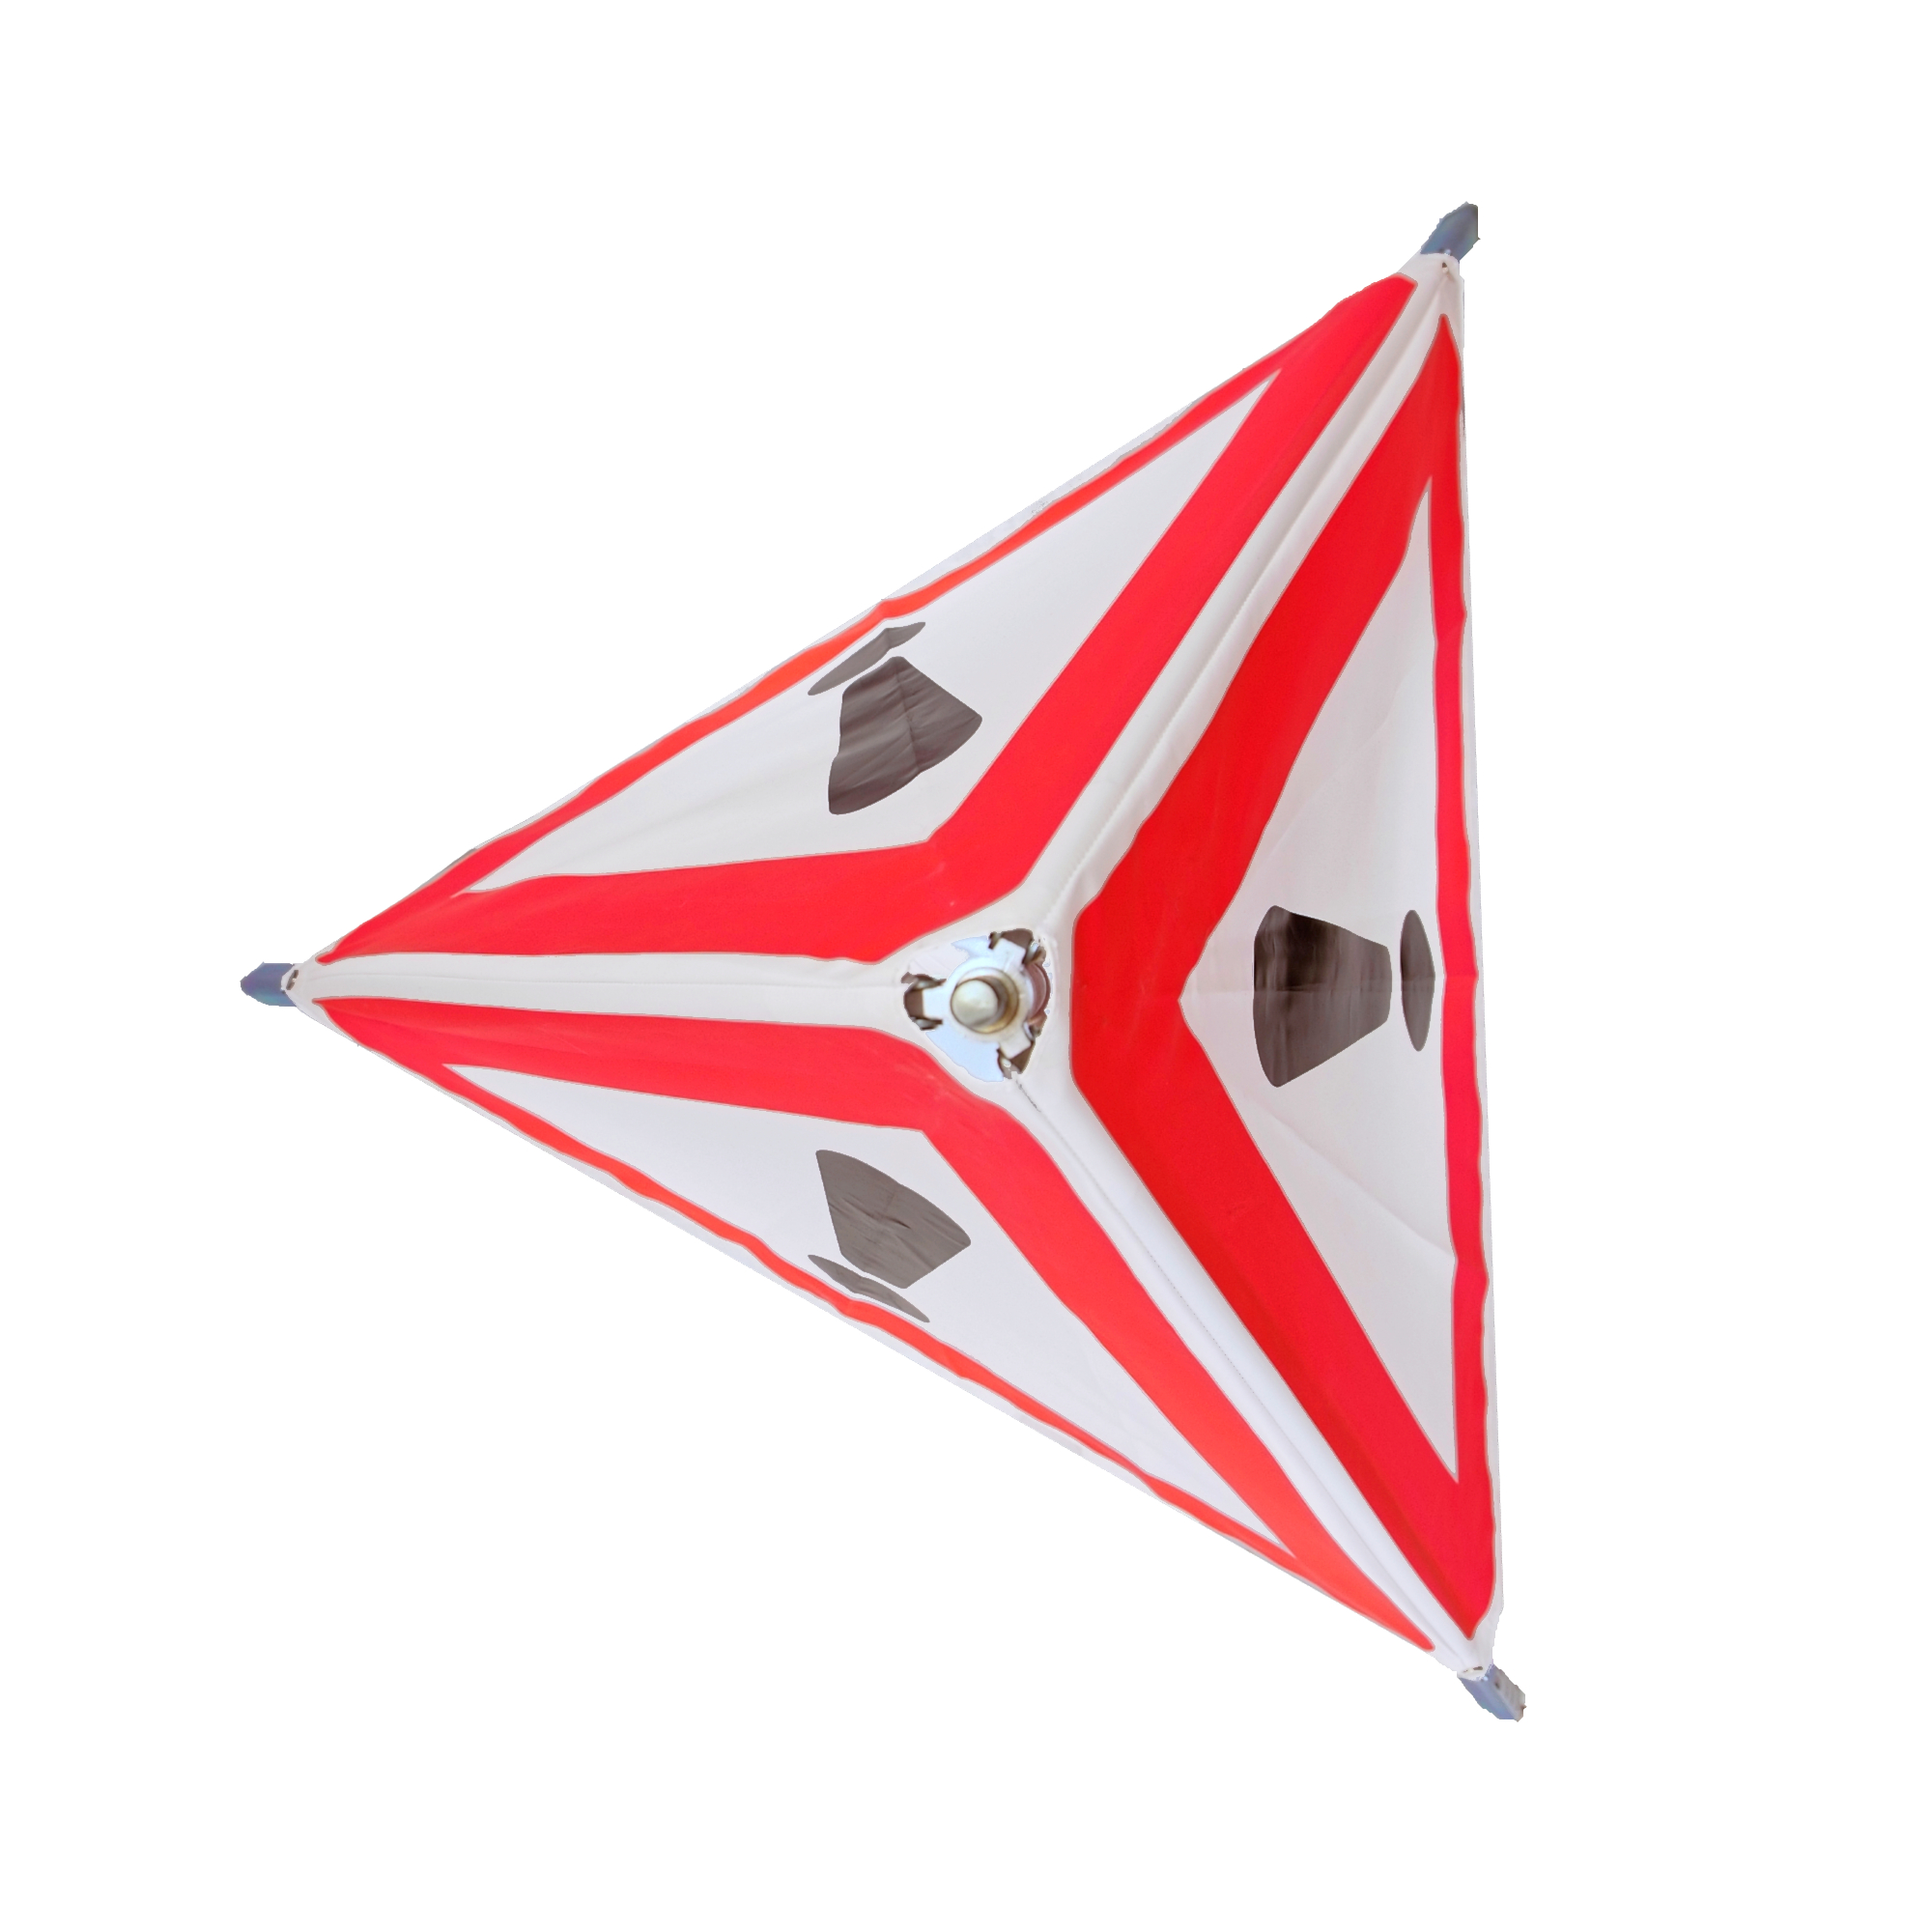 Warnflagge mit Holzstab günstig kaufen bei Maertin - der technische  Fachhandel